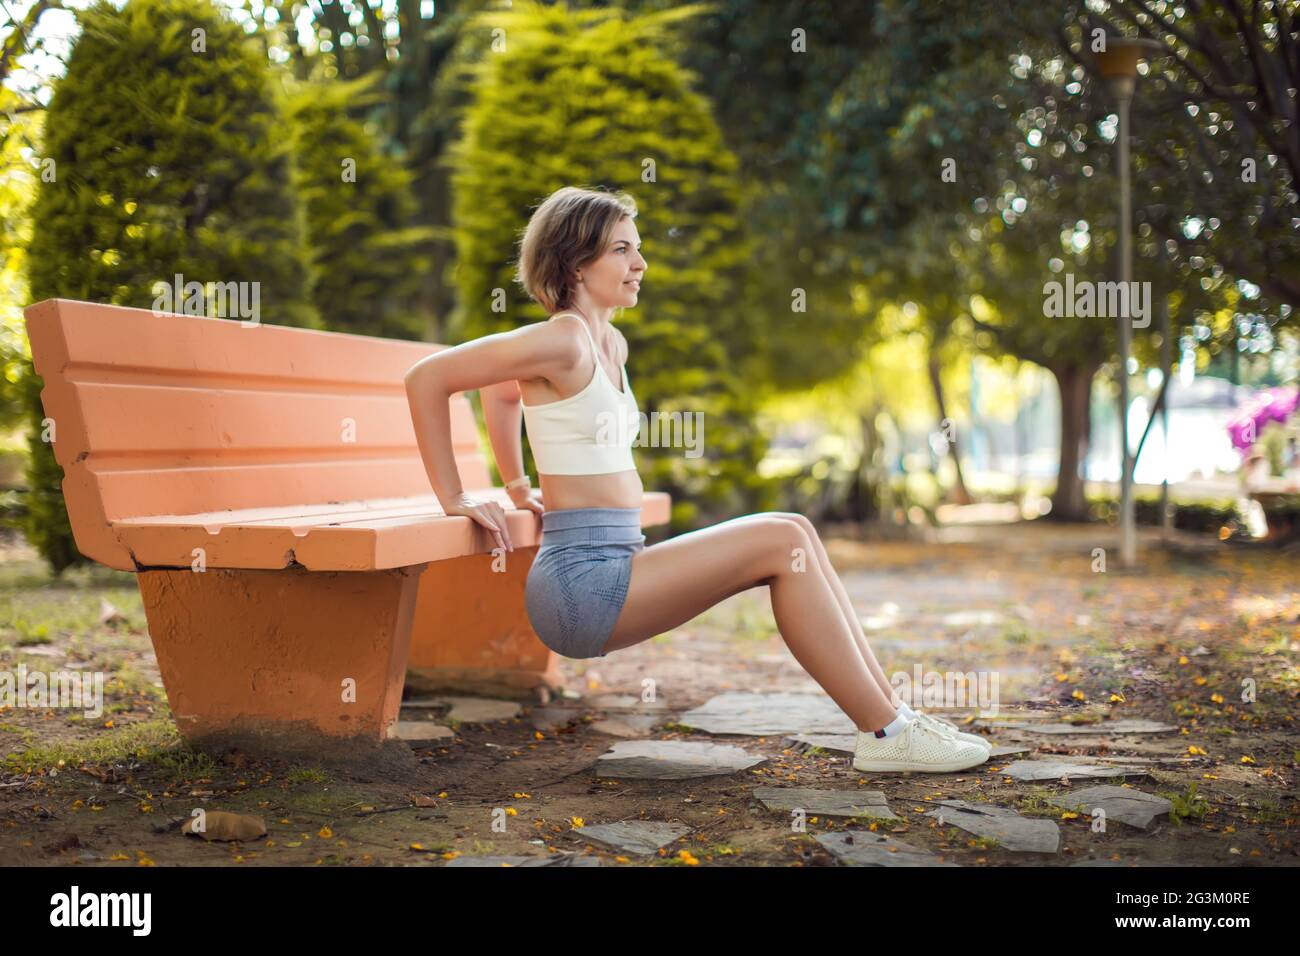 Ejercicio en el banco. Mujer entrenando en el parque. Concepto de salud y fitness Foto de stock